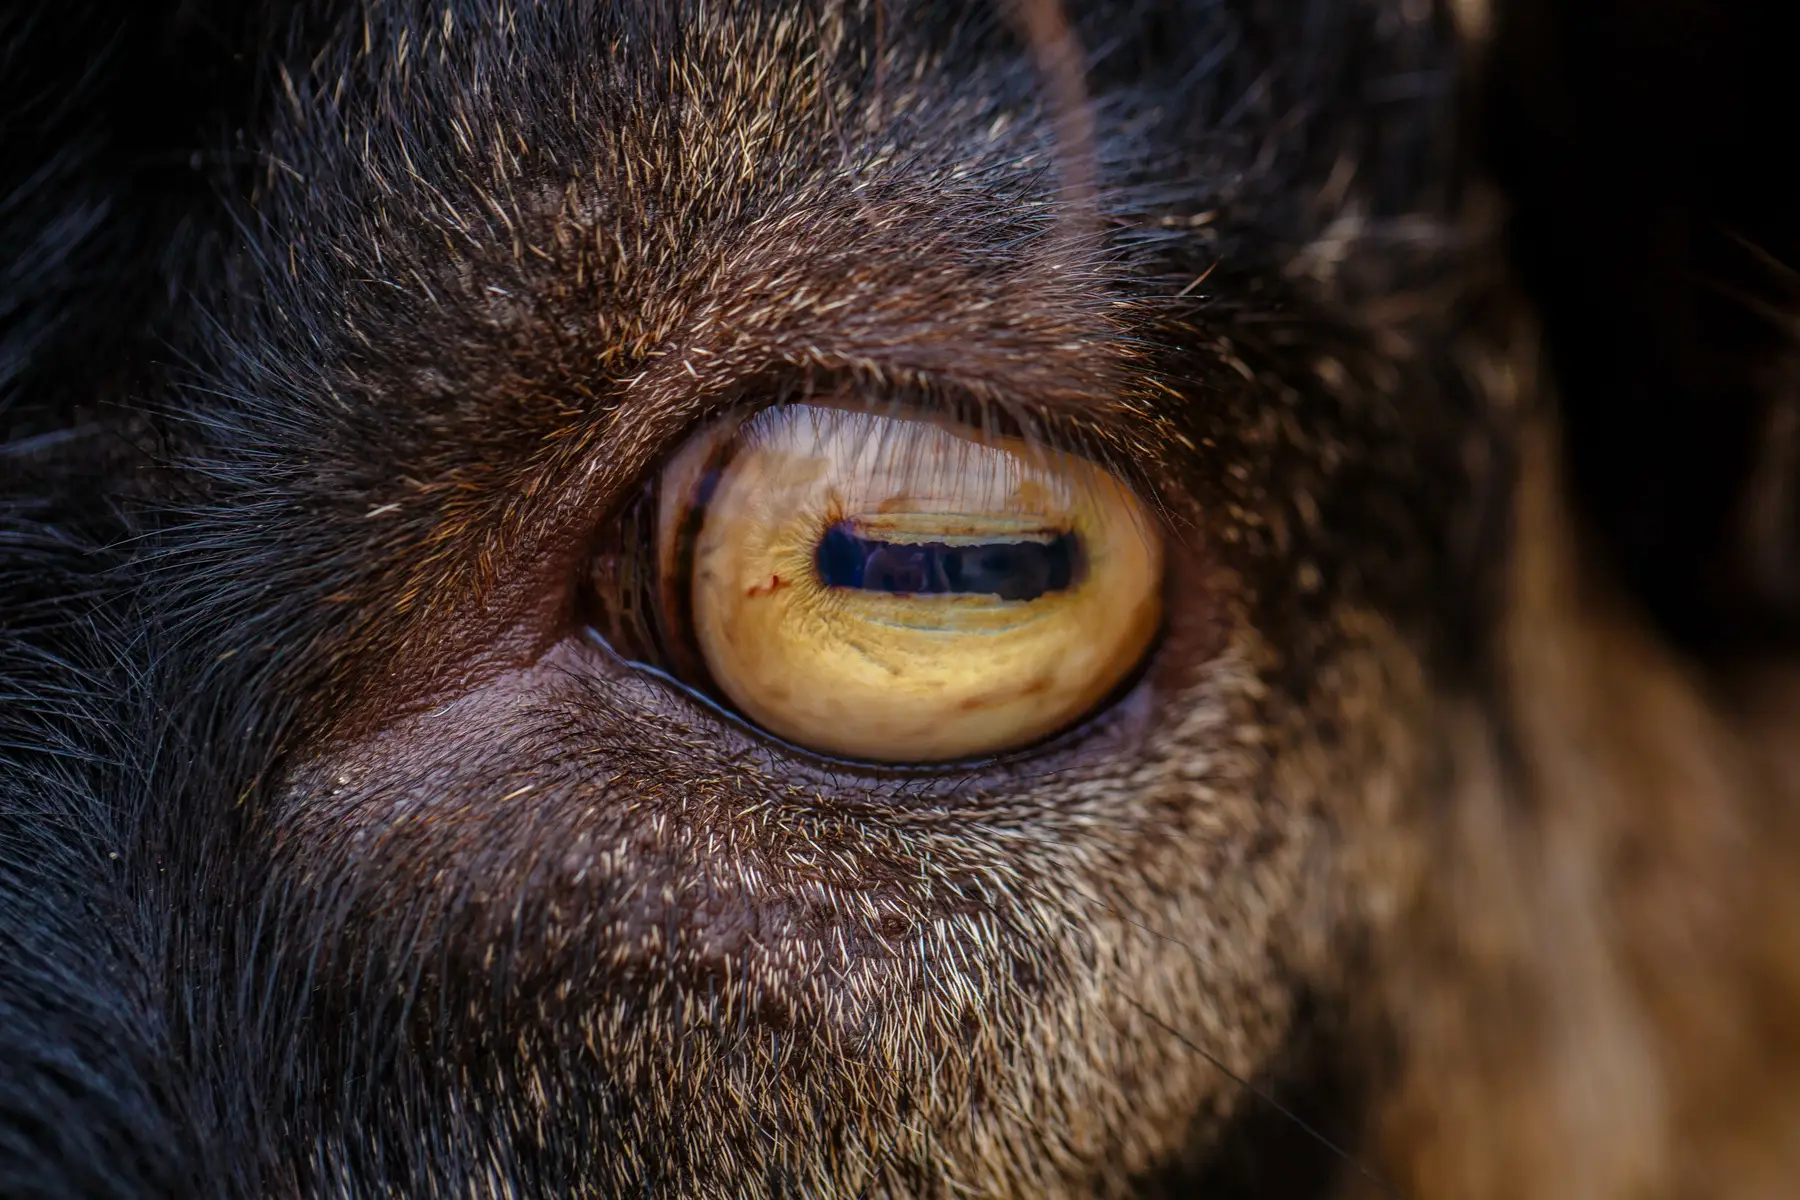 Goat eye